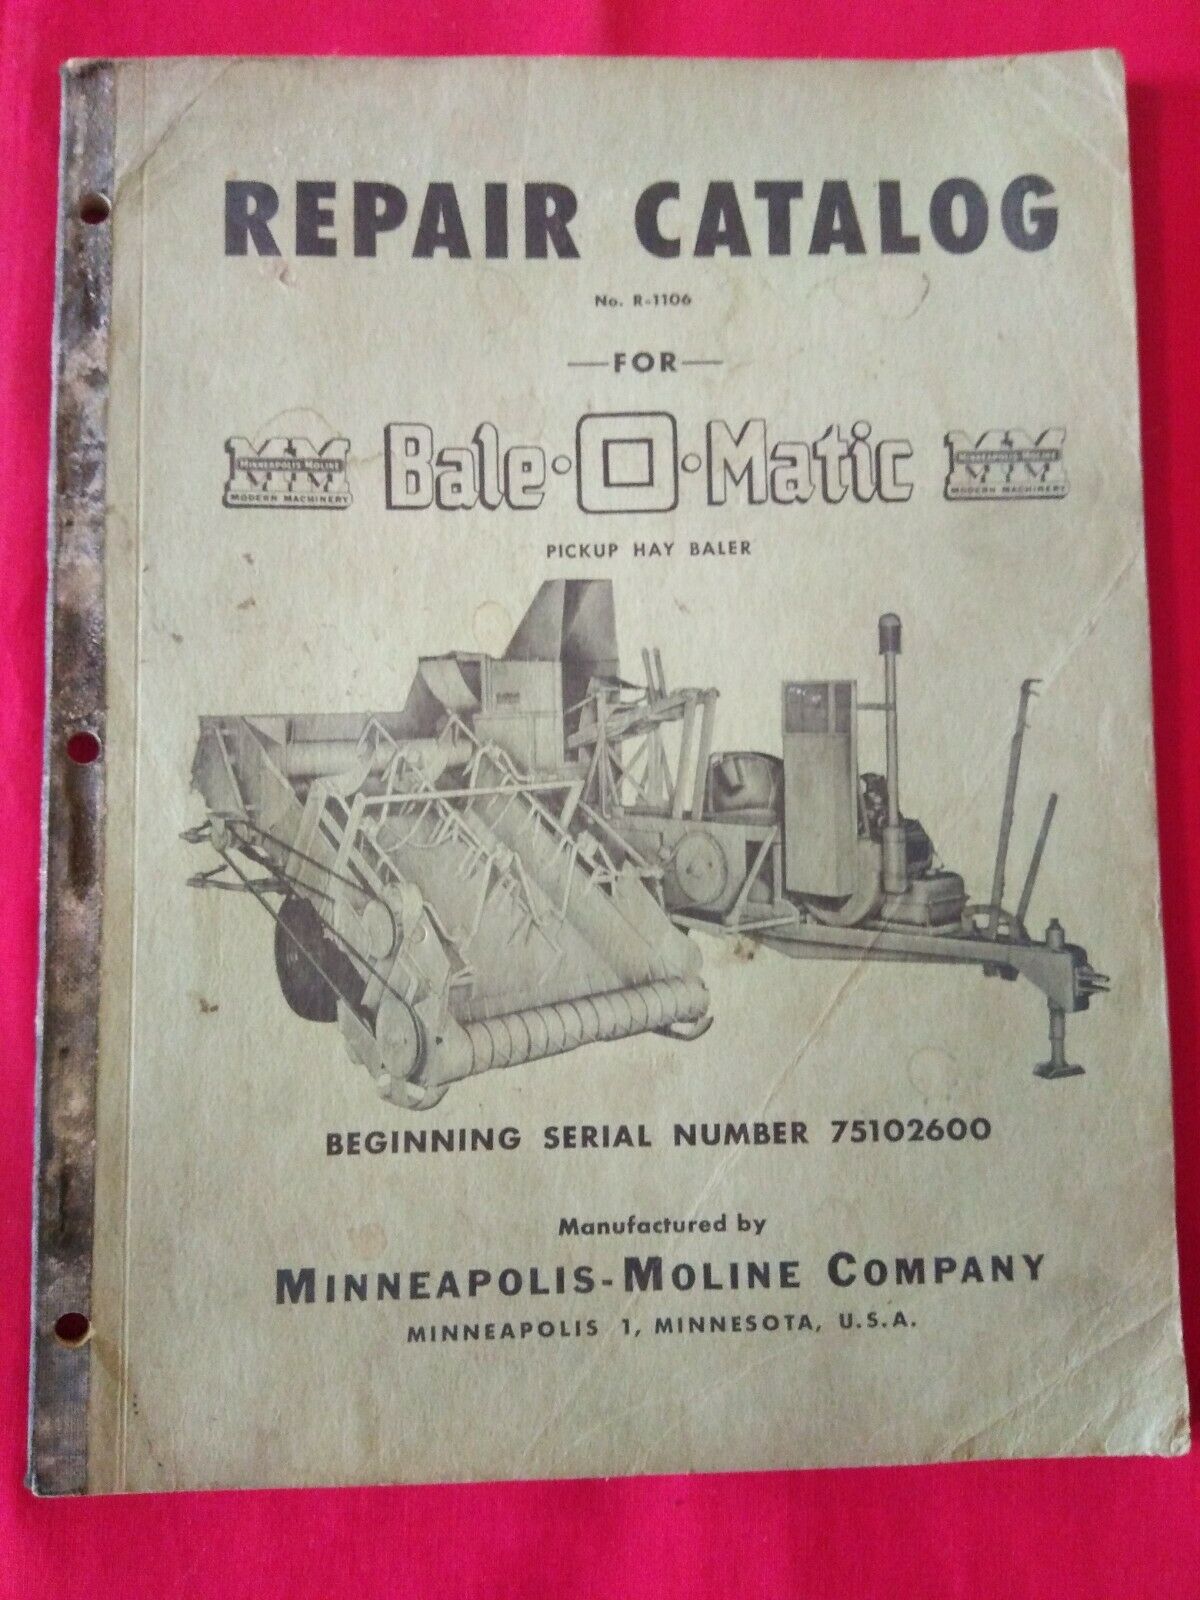 Vintage Minneapolis Moline Repair Catalog Manual Bale-o-matic R-1106 Original